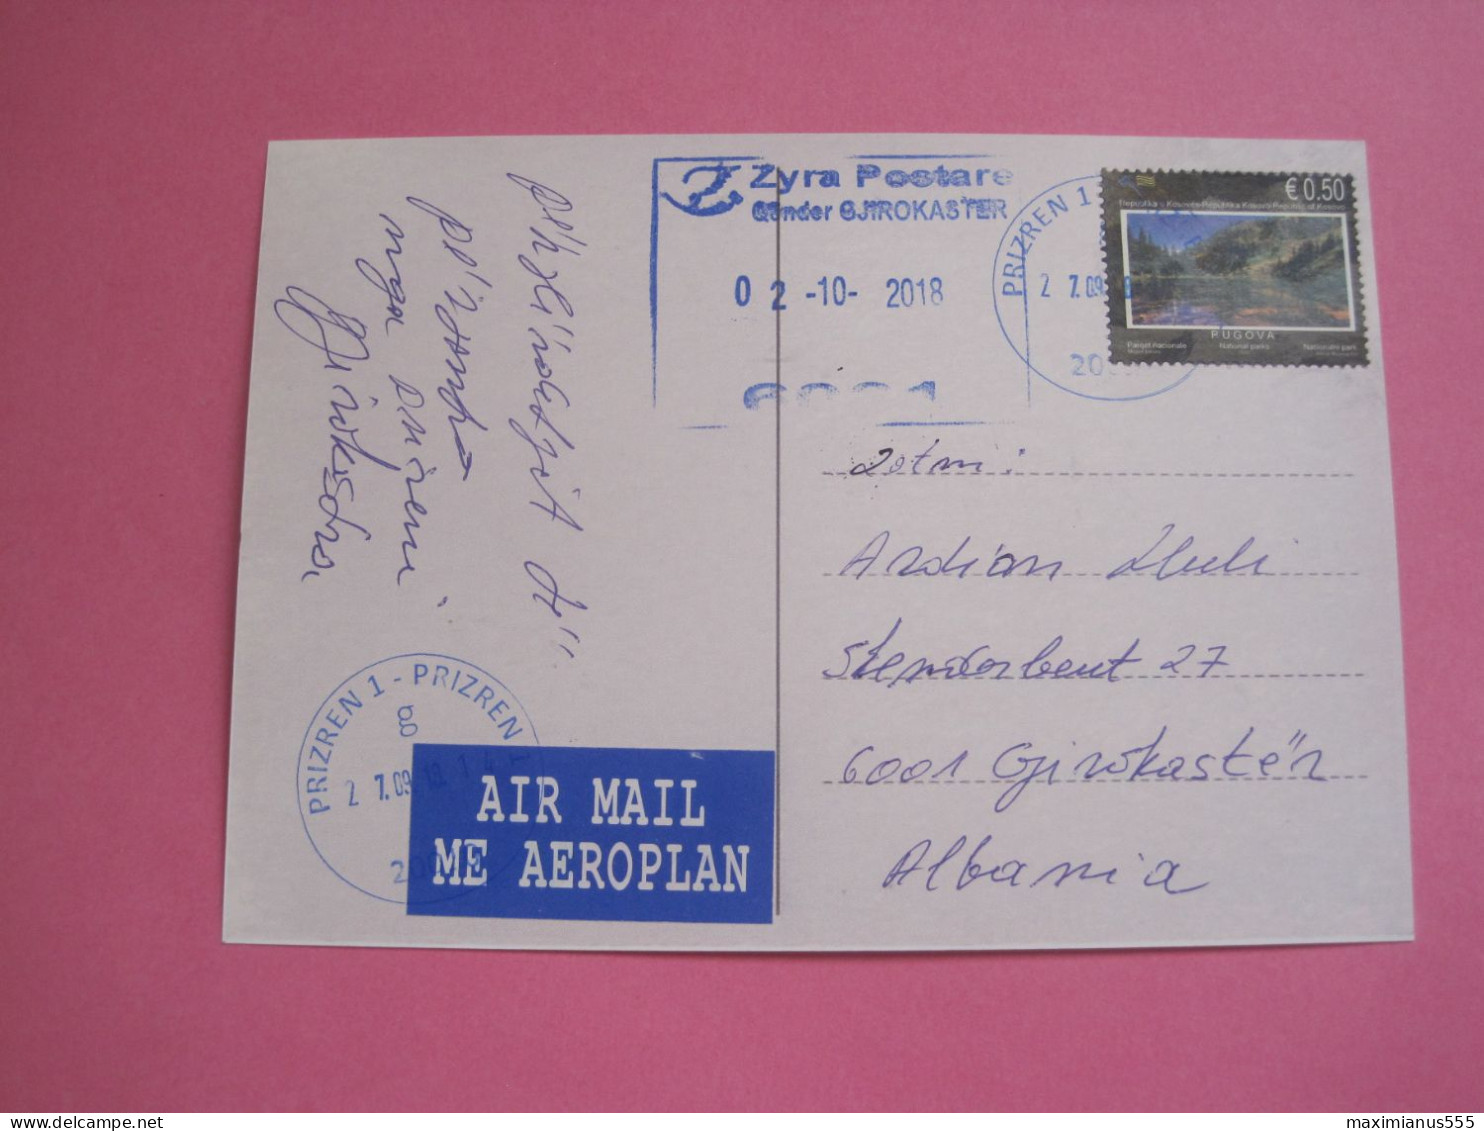 Kosovo Postcard Sent From Prizren To Gjirokaster (Albania) 2018 (4) - Kosovo